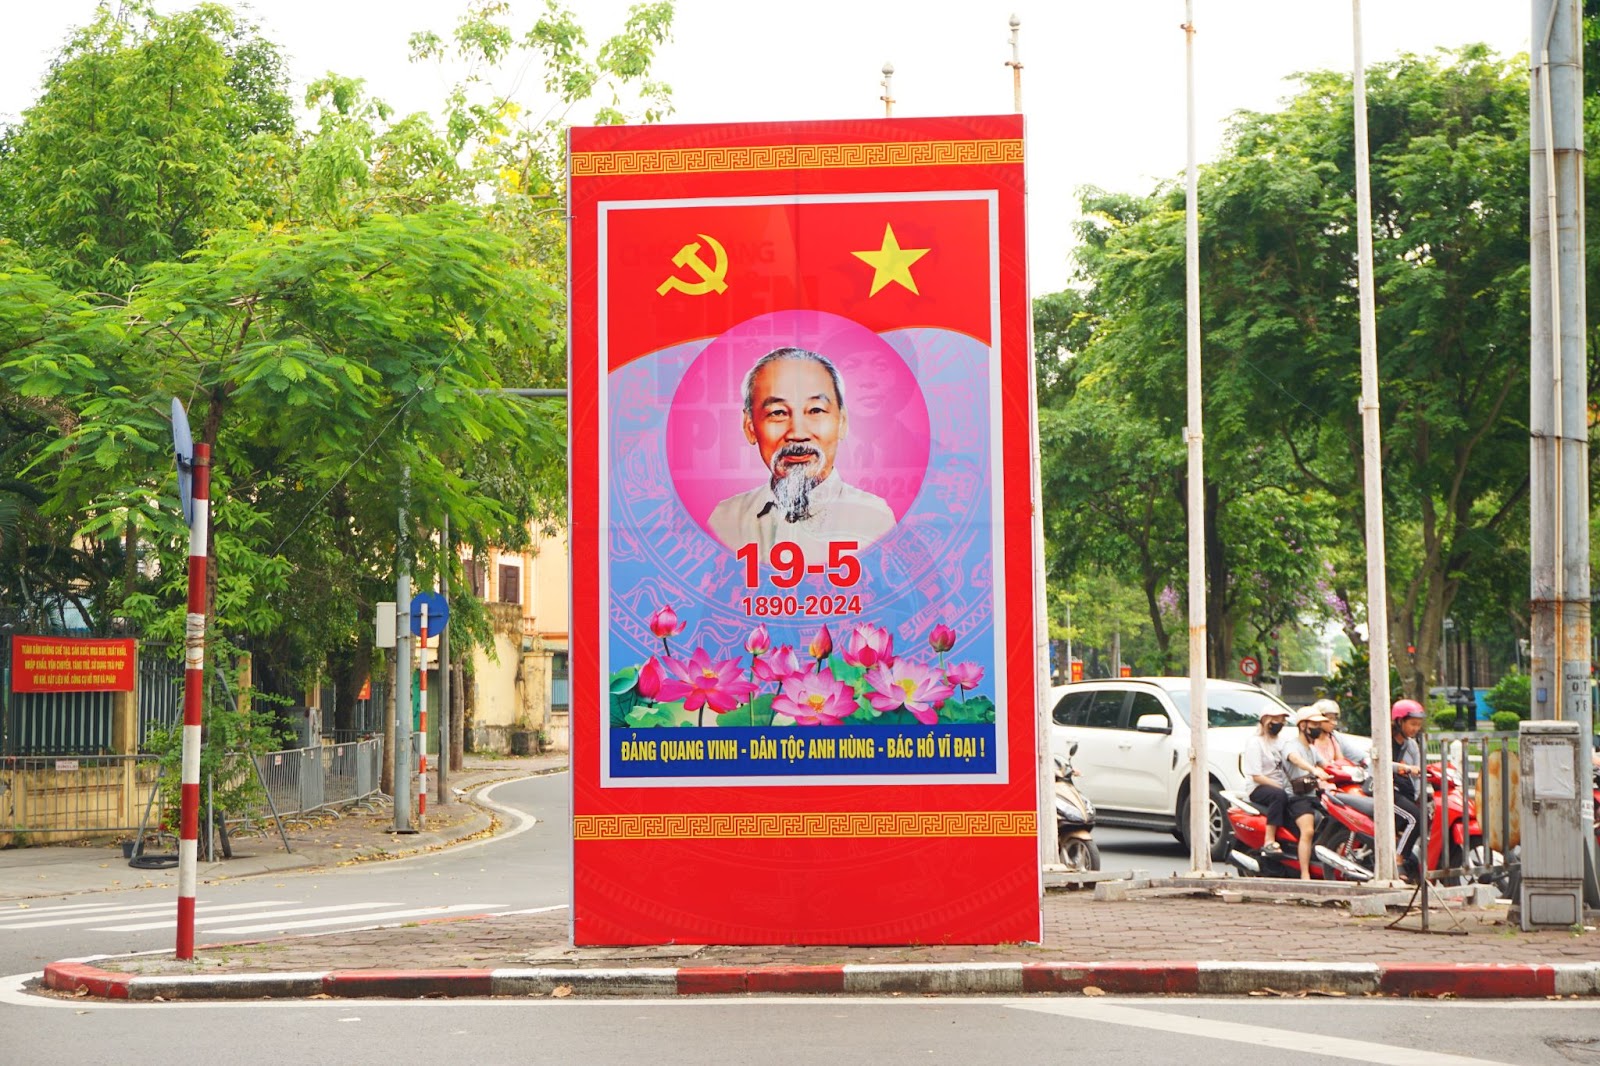 Hà Nội rợp sắc cờ hoa kỷ niệm ngày sinh Chủ tịch Hồ Chí Minh - Ảnh 11.